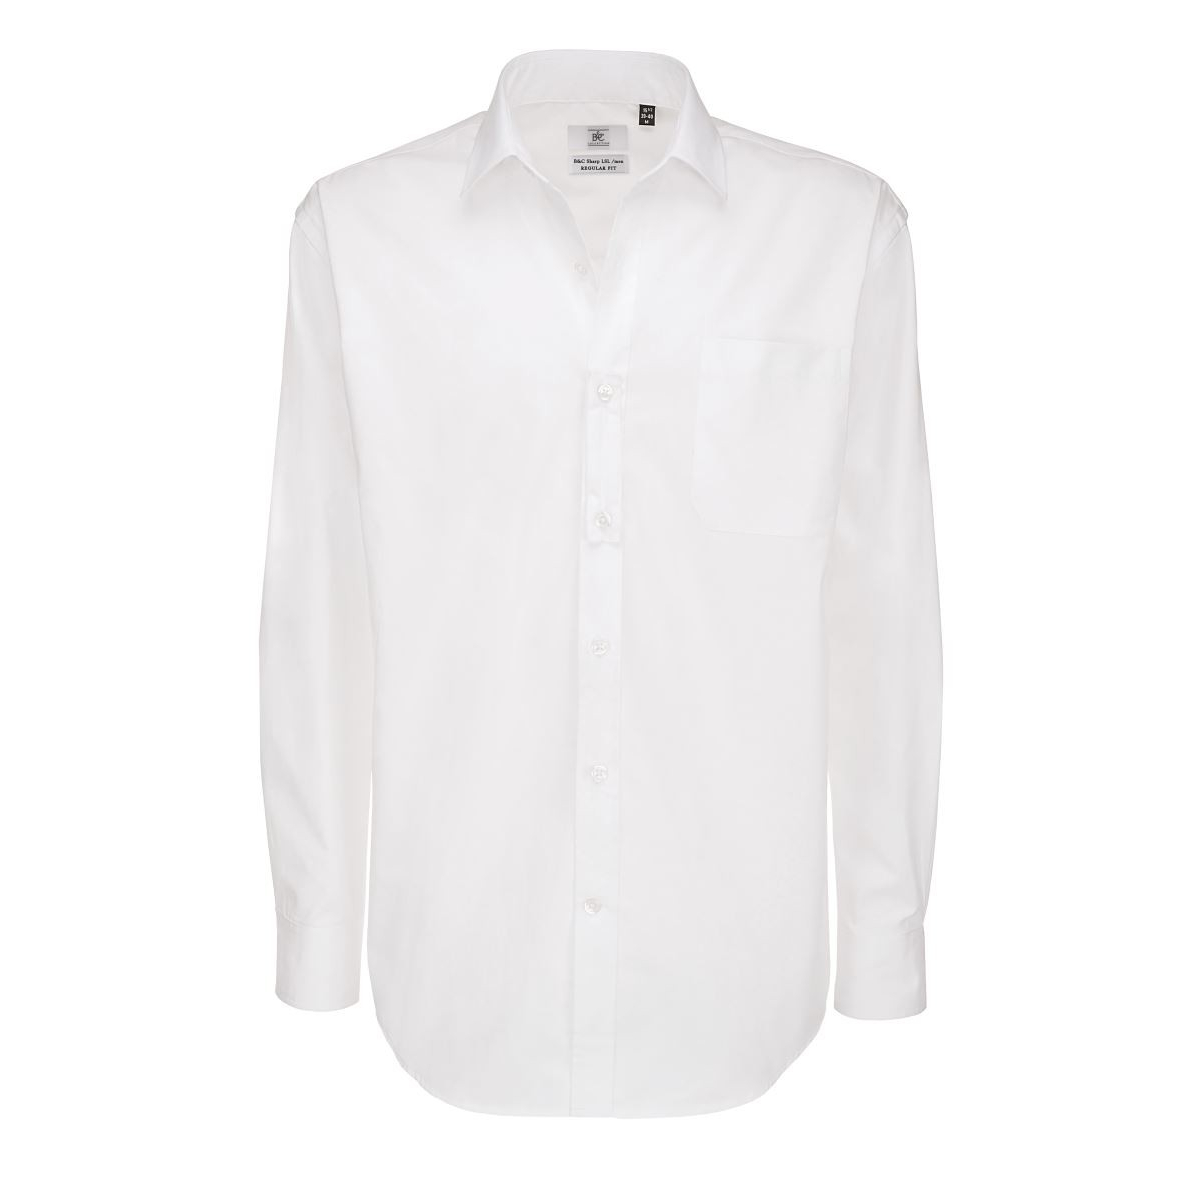 Pánská keprová košile B&C Sharp s dlouhým rukávem - bílá, 4XL